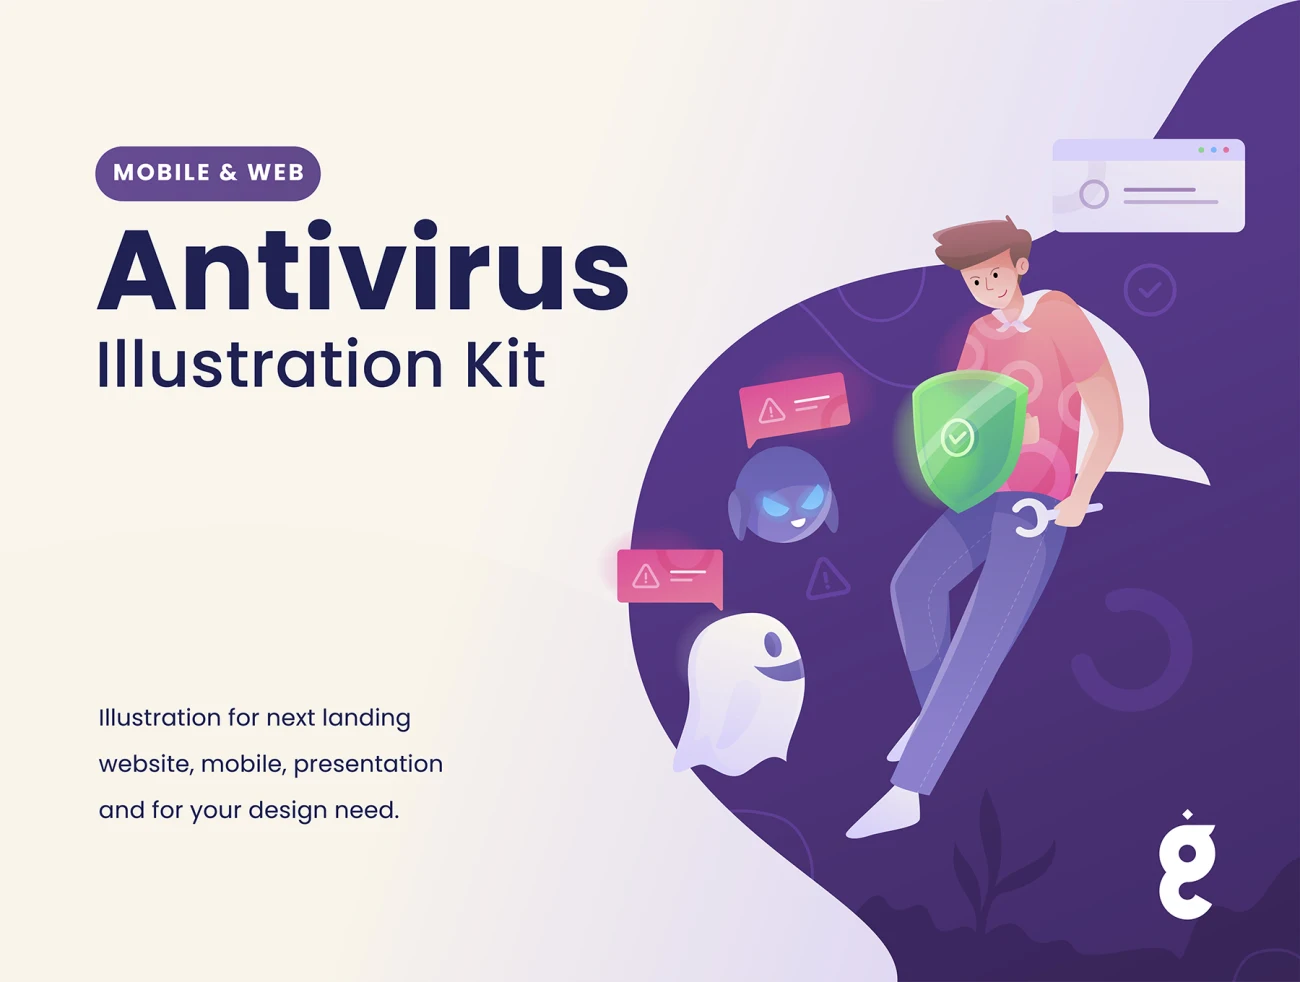 Antivirus Illustration Kit 防病毒插图包-场景插画、插画、插画功能、插画风格、概念创意、模块化套件、科技智能、营销创业-到位啦UI